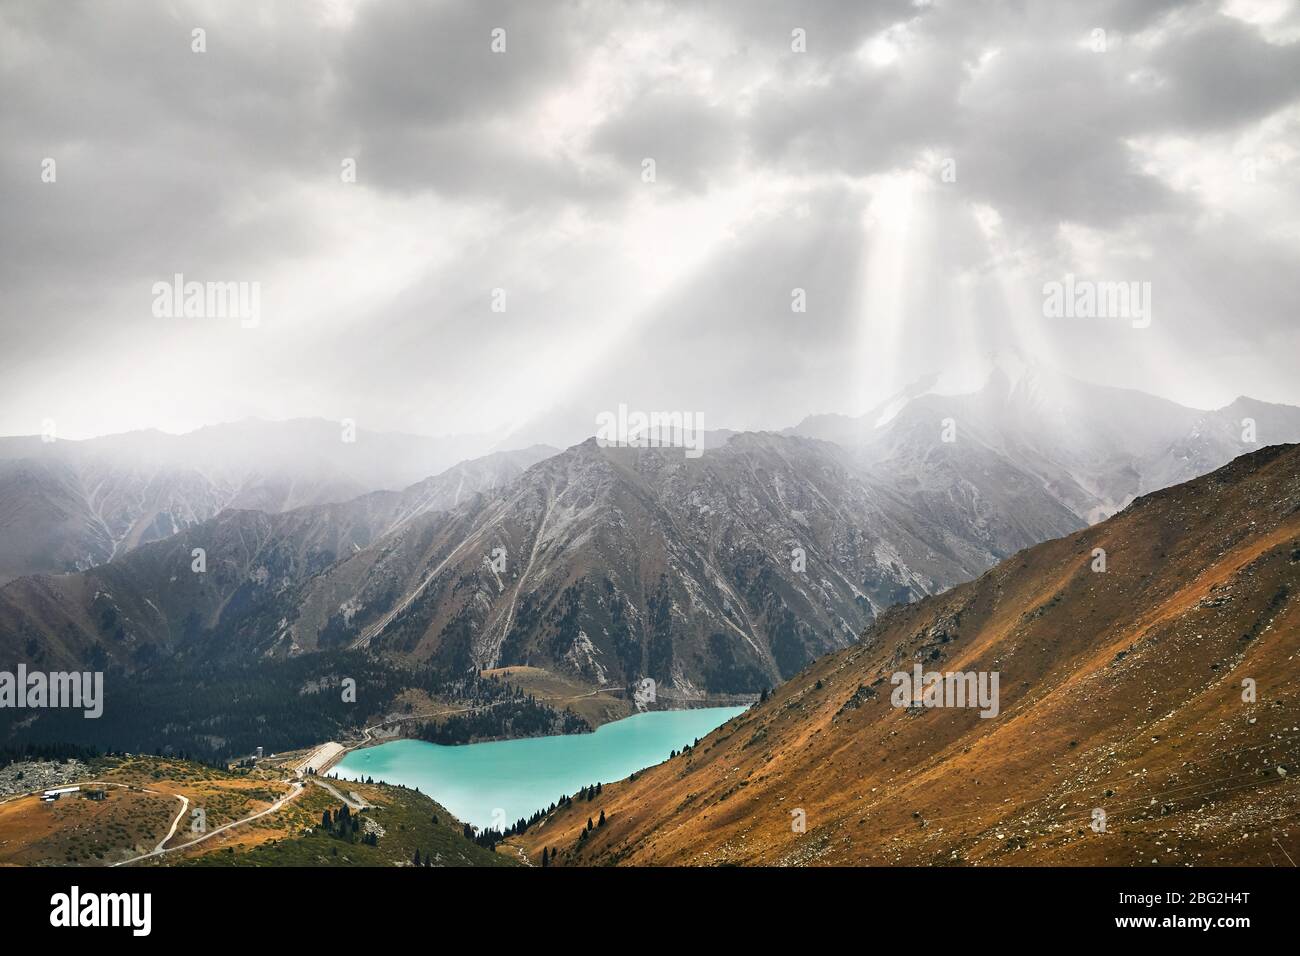 Beau paysage de crystal clear lake entouré de montagnes au ciel couvert à Almaty, Kazakhstan Banque D'Images